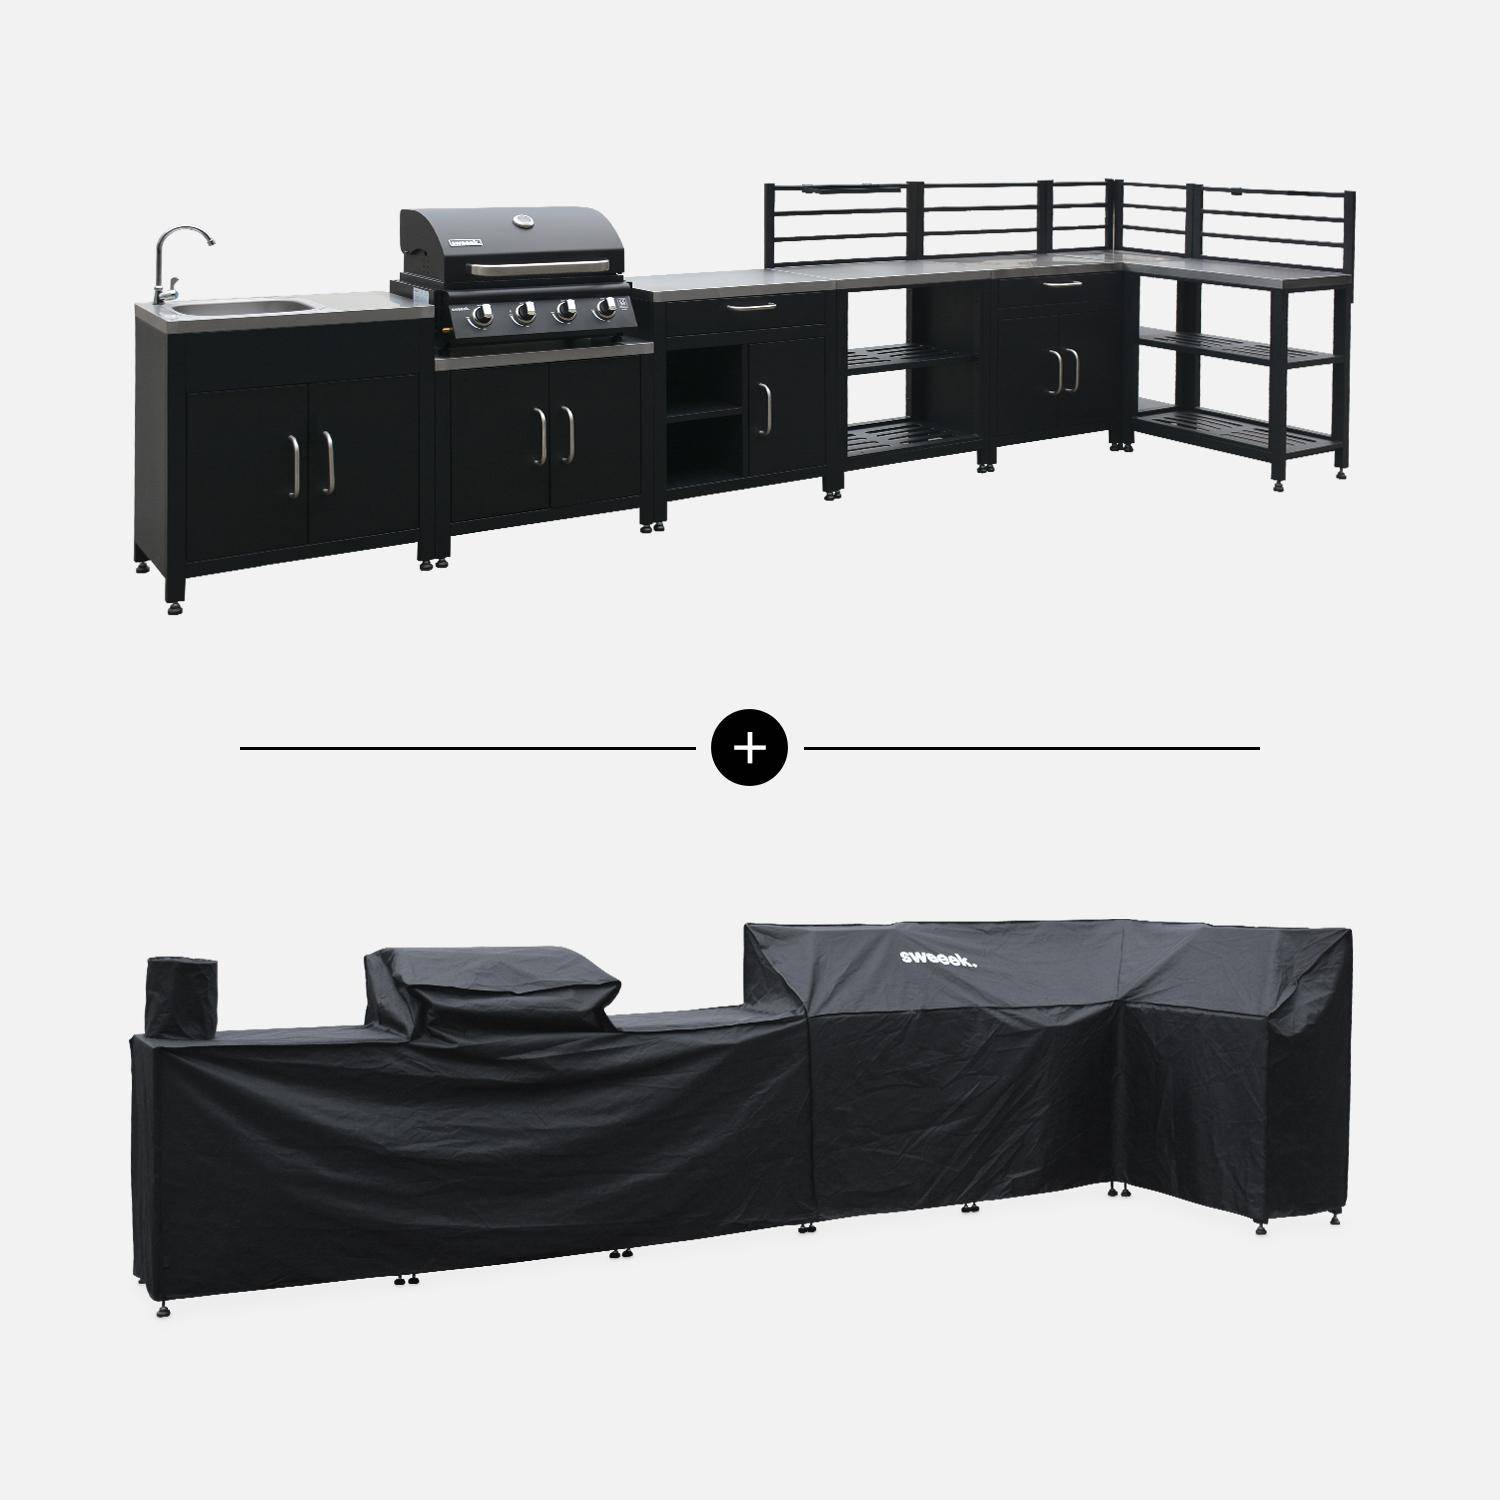 Ensemble de meubles de cuisine extérieure en acier inoxydable 8 modules avec barbecue au gaz 4 brûleurs et housse de protection,sweeek,Photo1